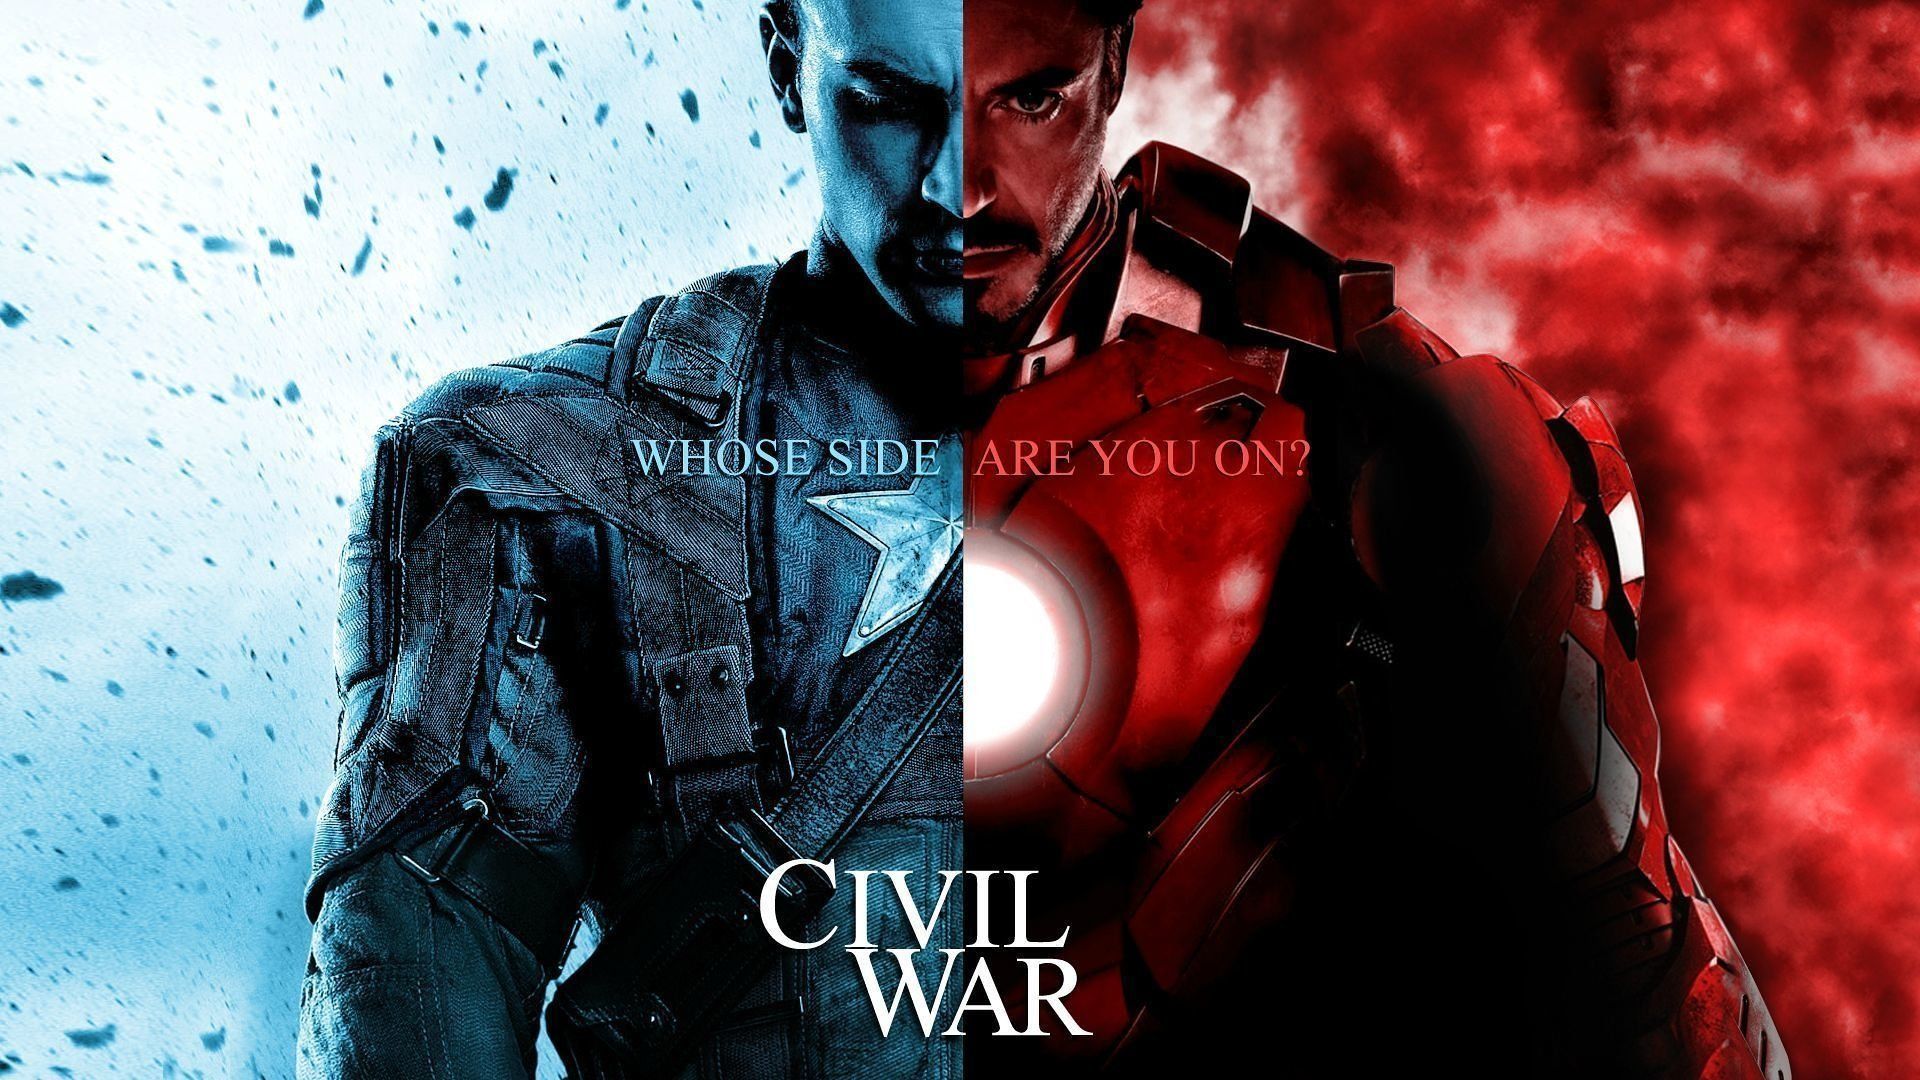 Civil War Captain America Wallpaper Free Civil War Captain America Background